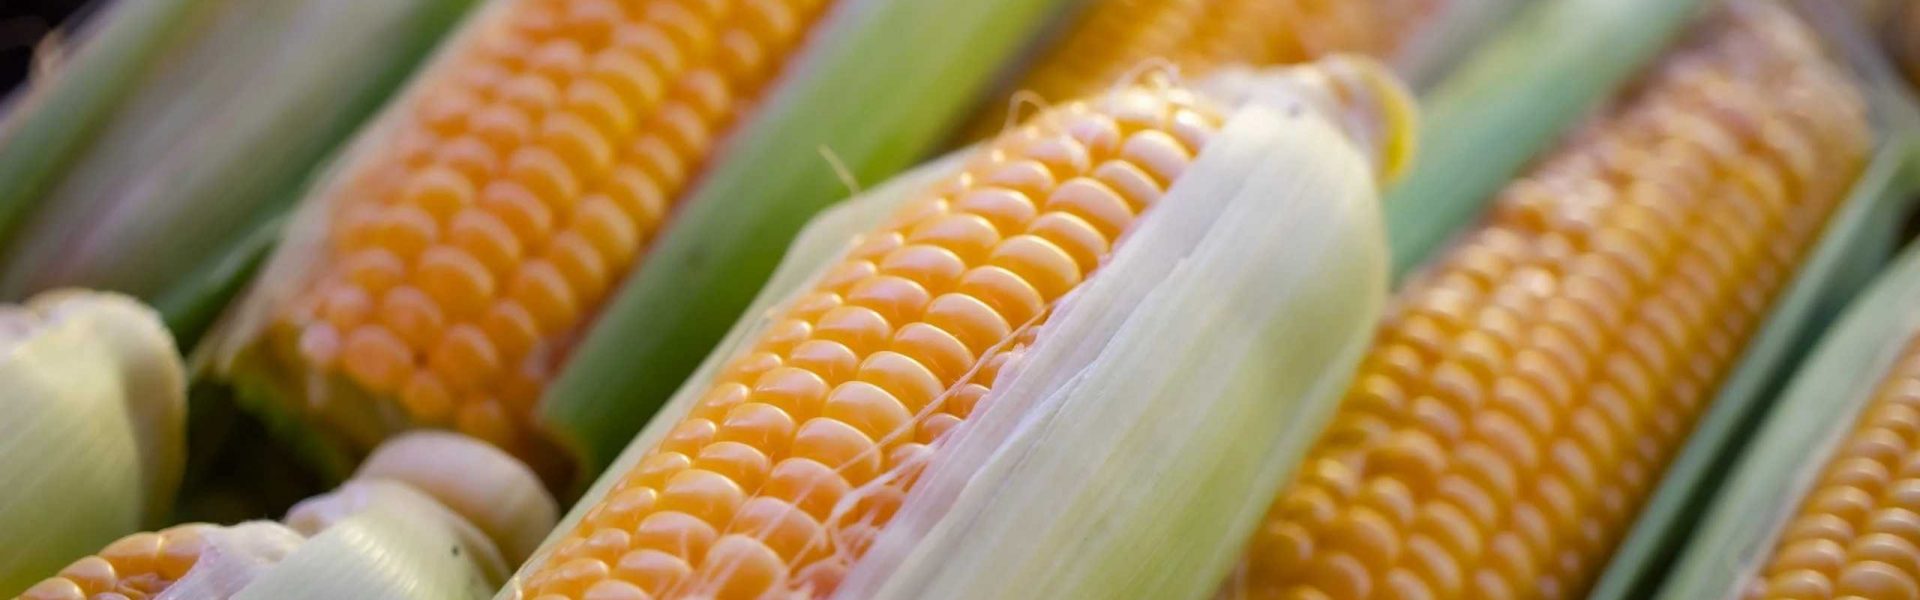 Estados Unidos solicita panel de solución por restricciones de maíz en México